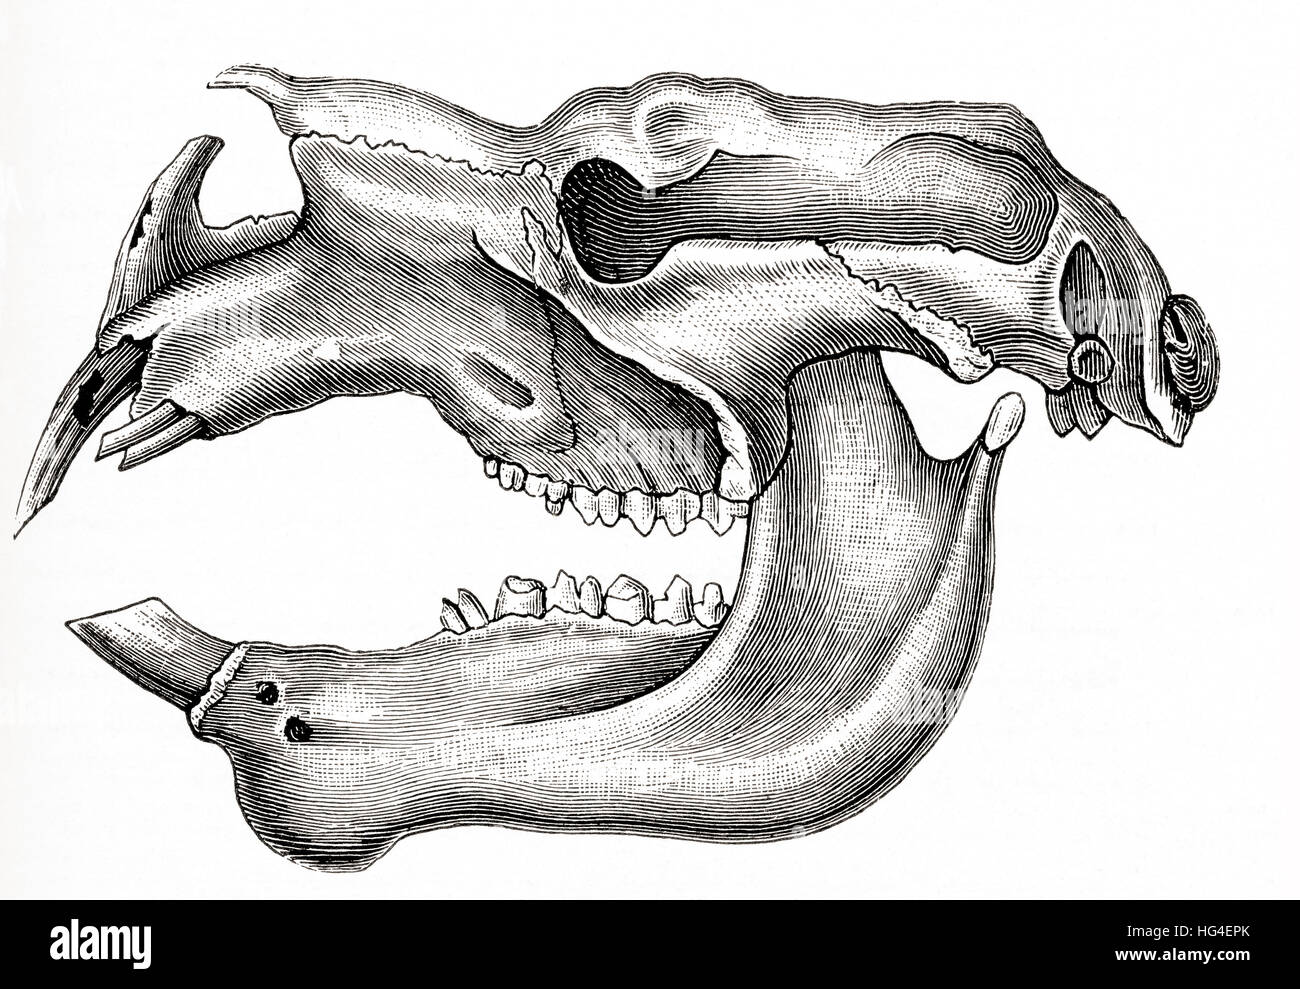 Schädel und Unterkiefer von einem gigantischen ausgestorben Beuteltier, Diprotodon-Australis.  Aus Meyers Lexikon veröffentlicht 1924. Stockfoto